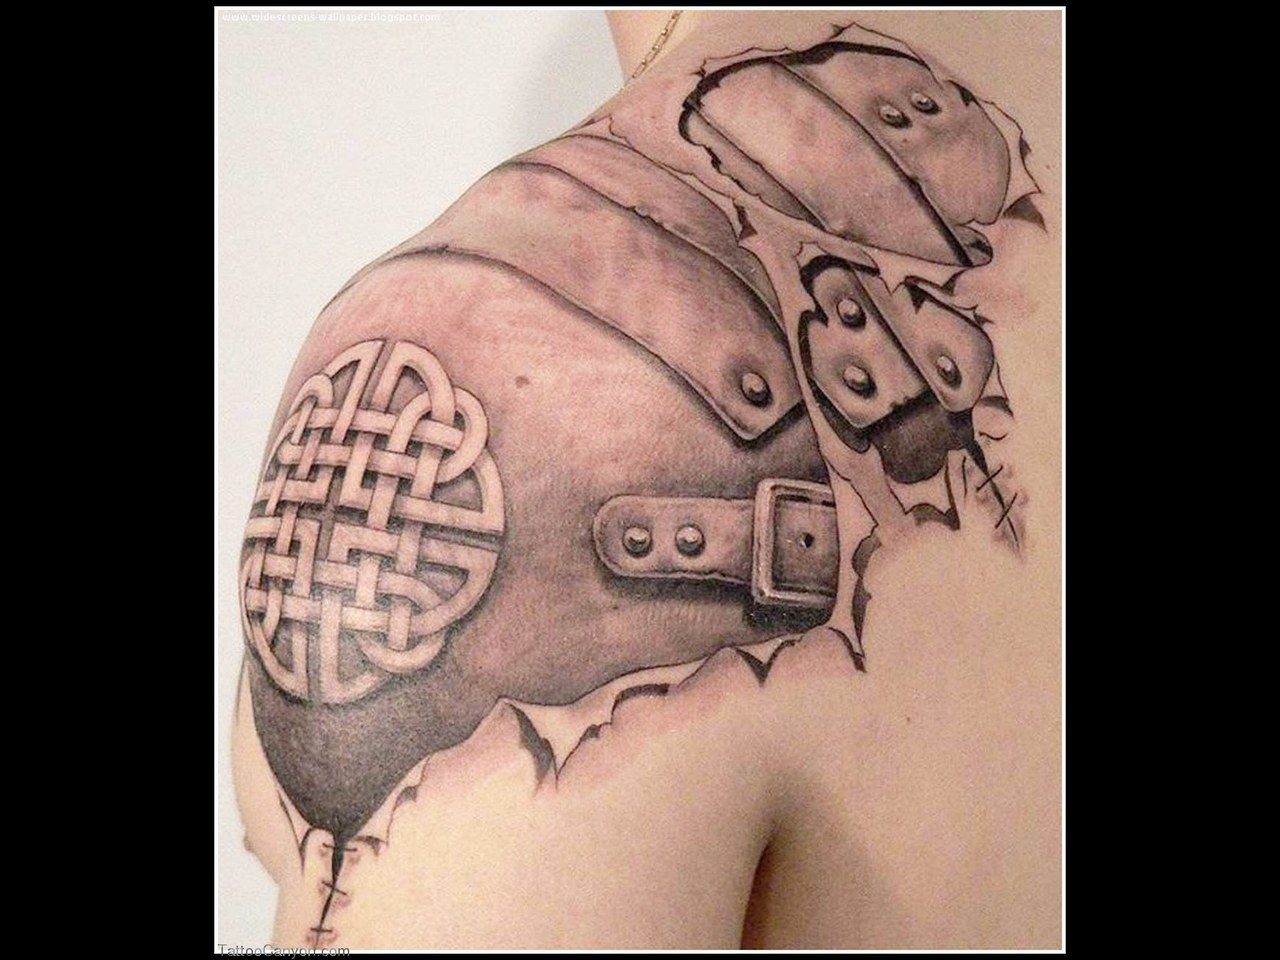 Irish Warrior Tattoo Sleeve Google Search Tattooed Armor regarding dimensions 1280 X 960